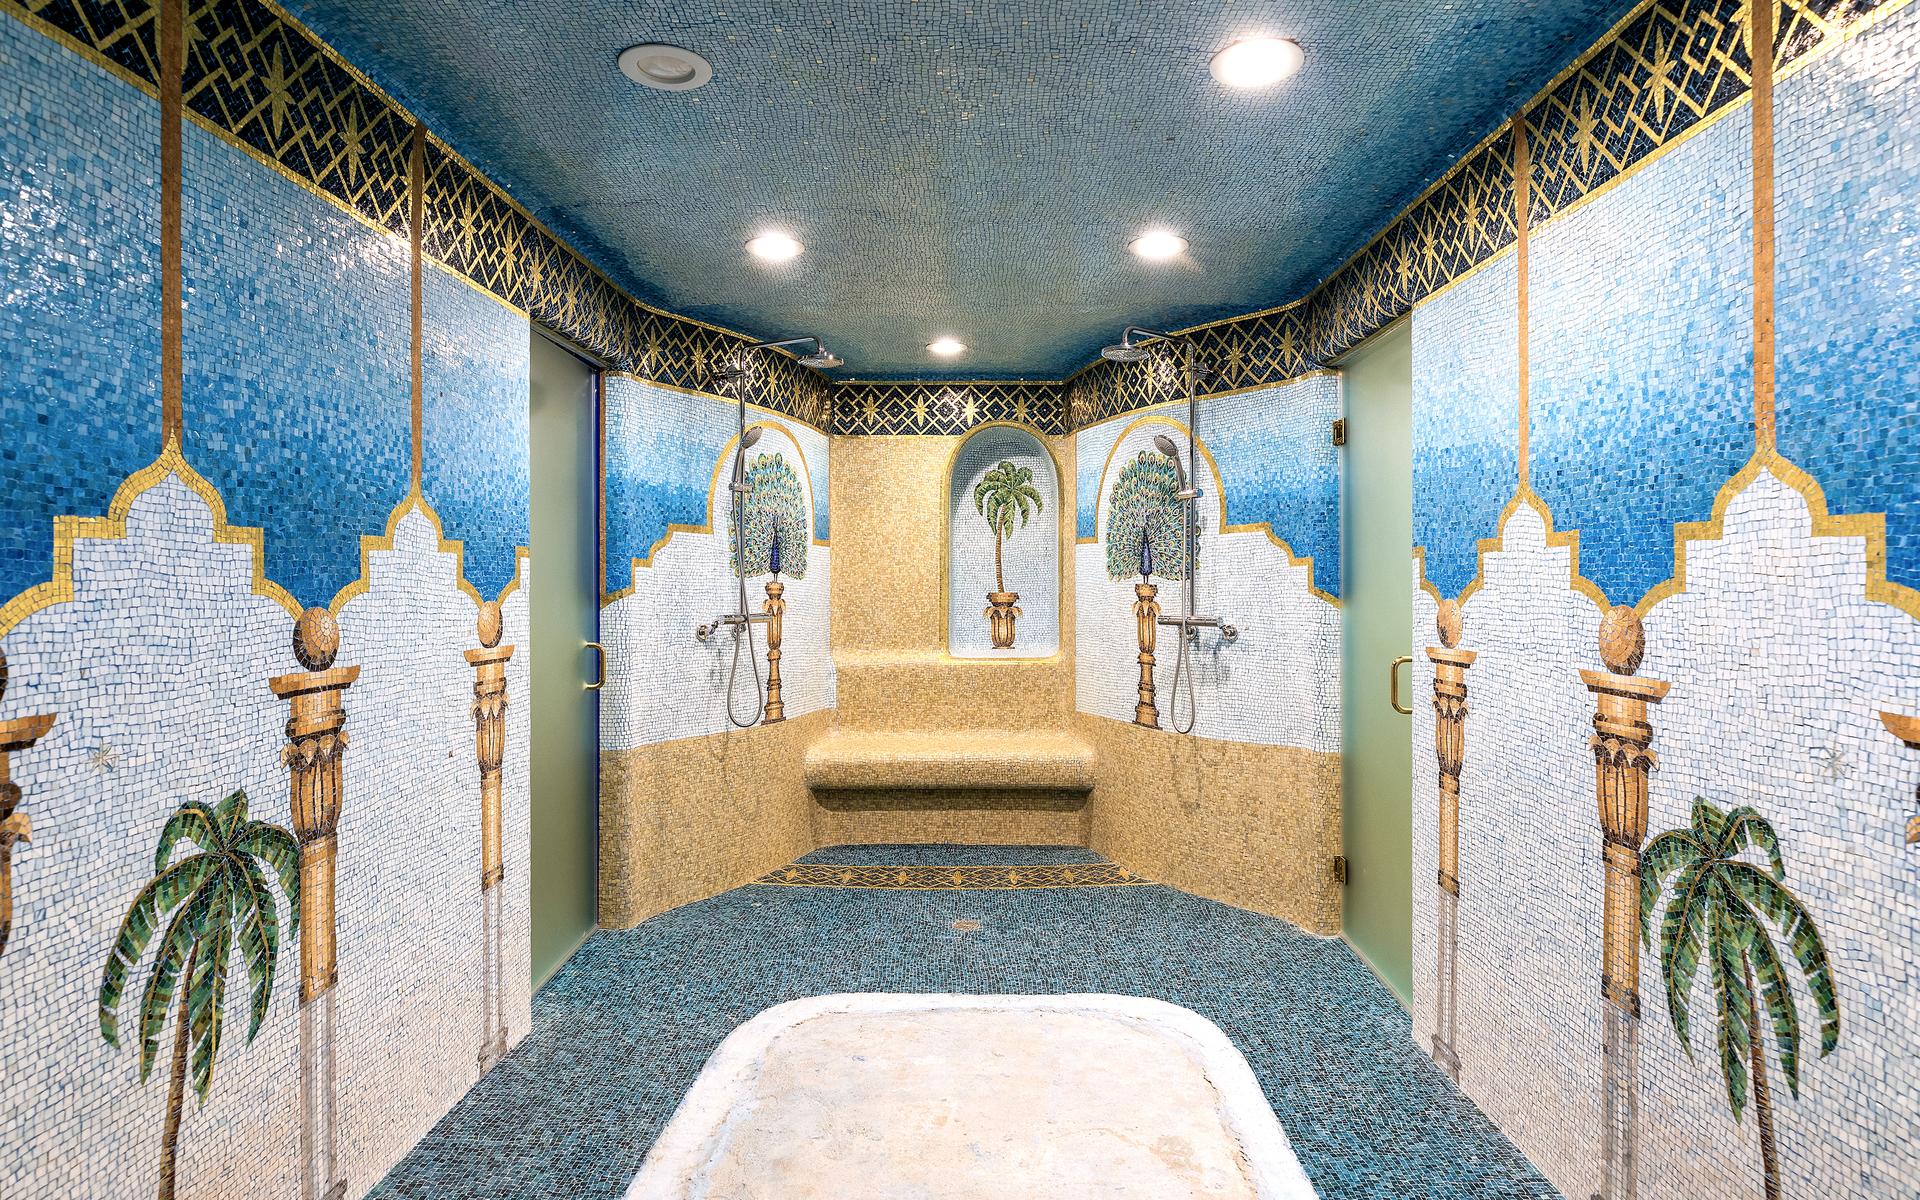 Även duschrummet är exotiskt och utsmyckat. Kanske leder glasdörrarna in till bastun eller spaavdelningen.